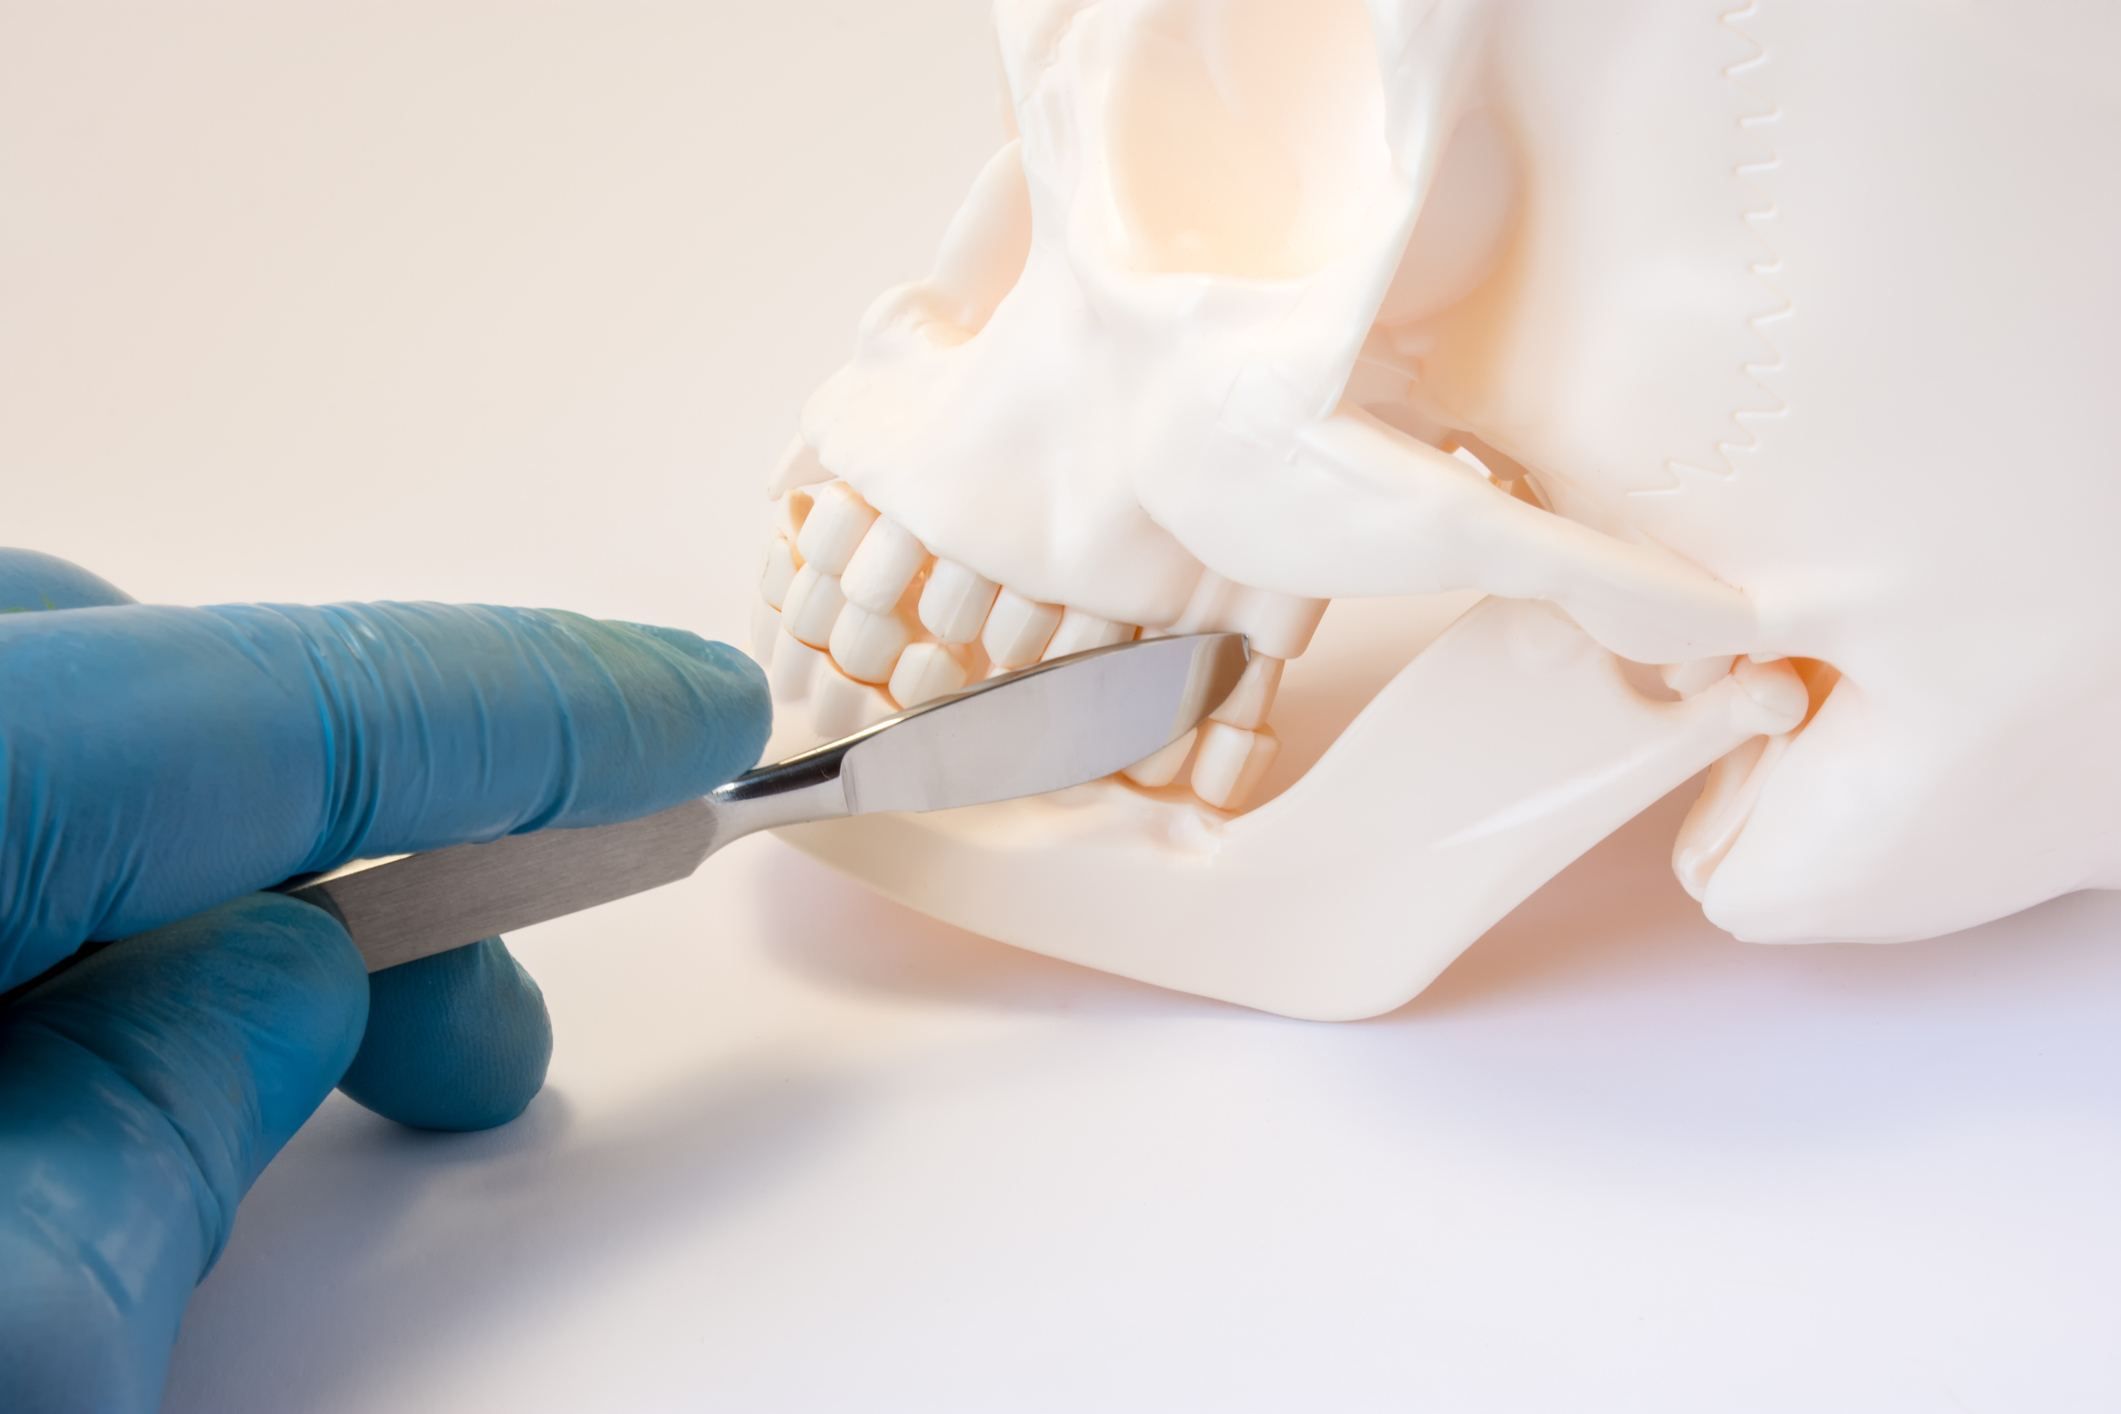 gloved hand holding scalpel near teeth on skeleton model